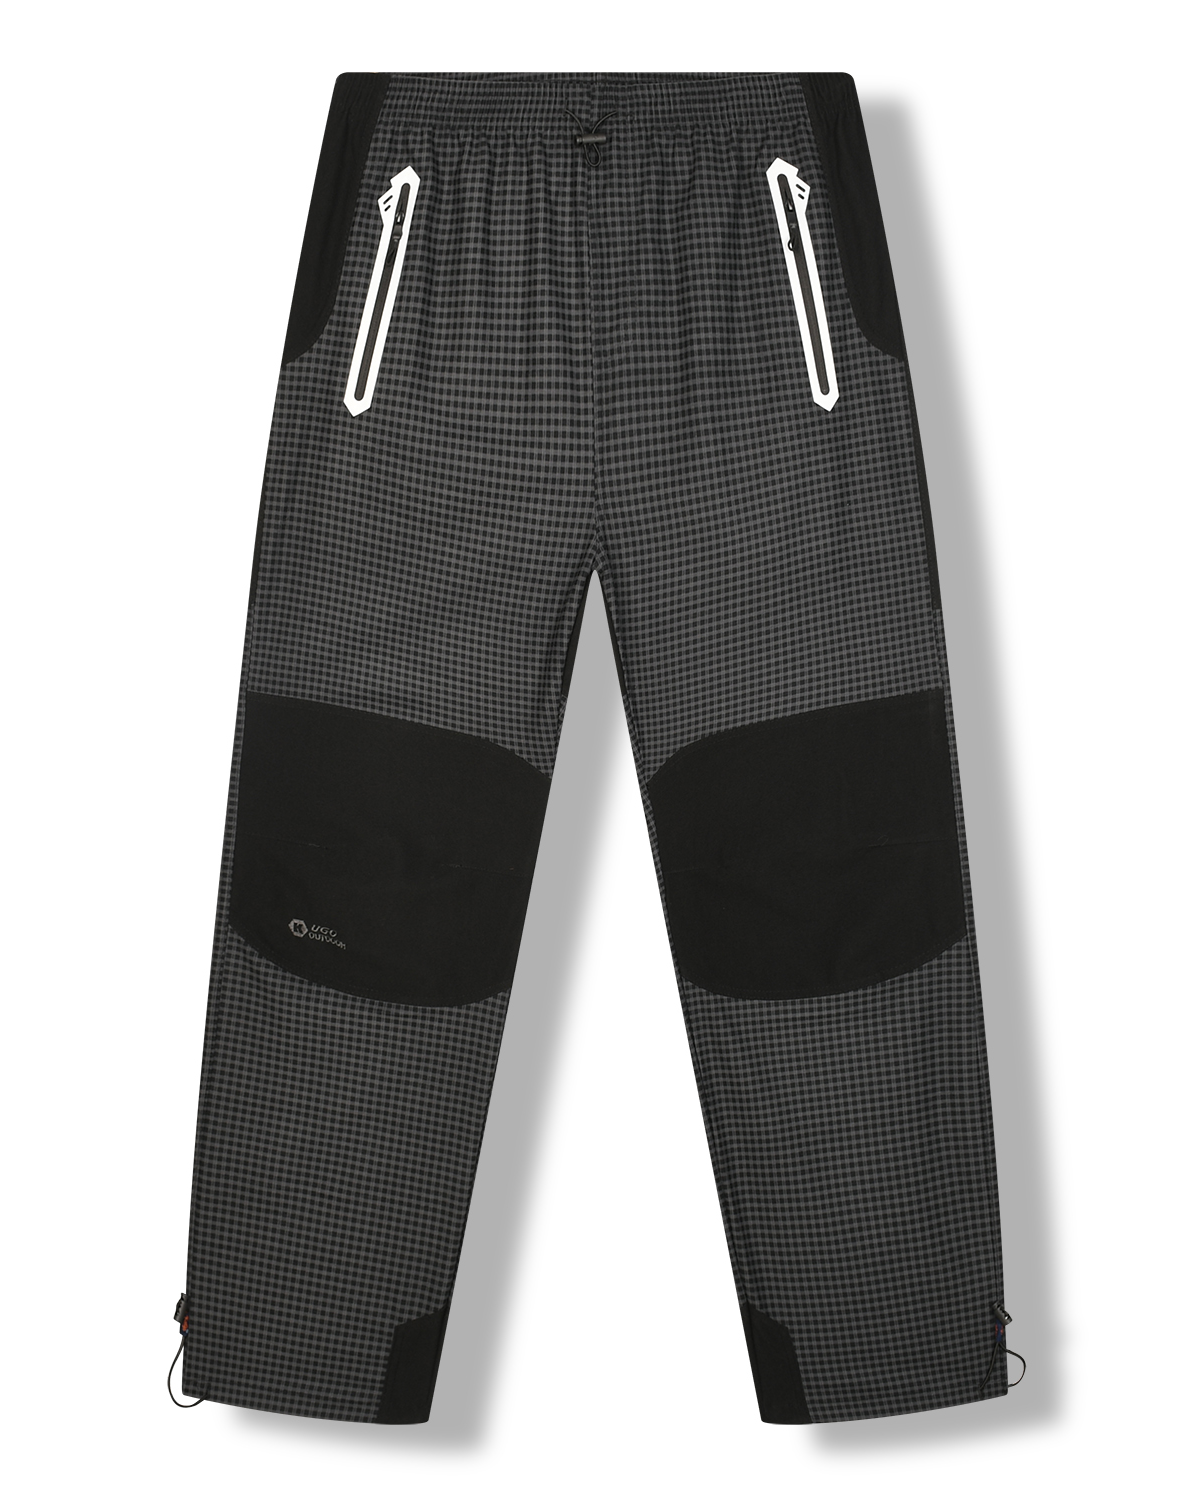 Pánské outdoorové kalhoty - KUGO G8555, šedá Barva: Šedá, Velikost: XL